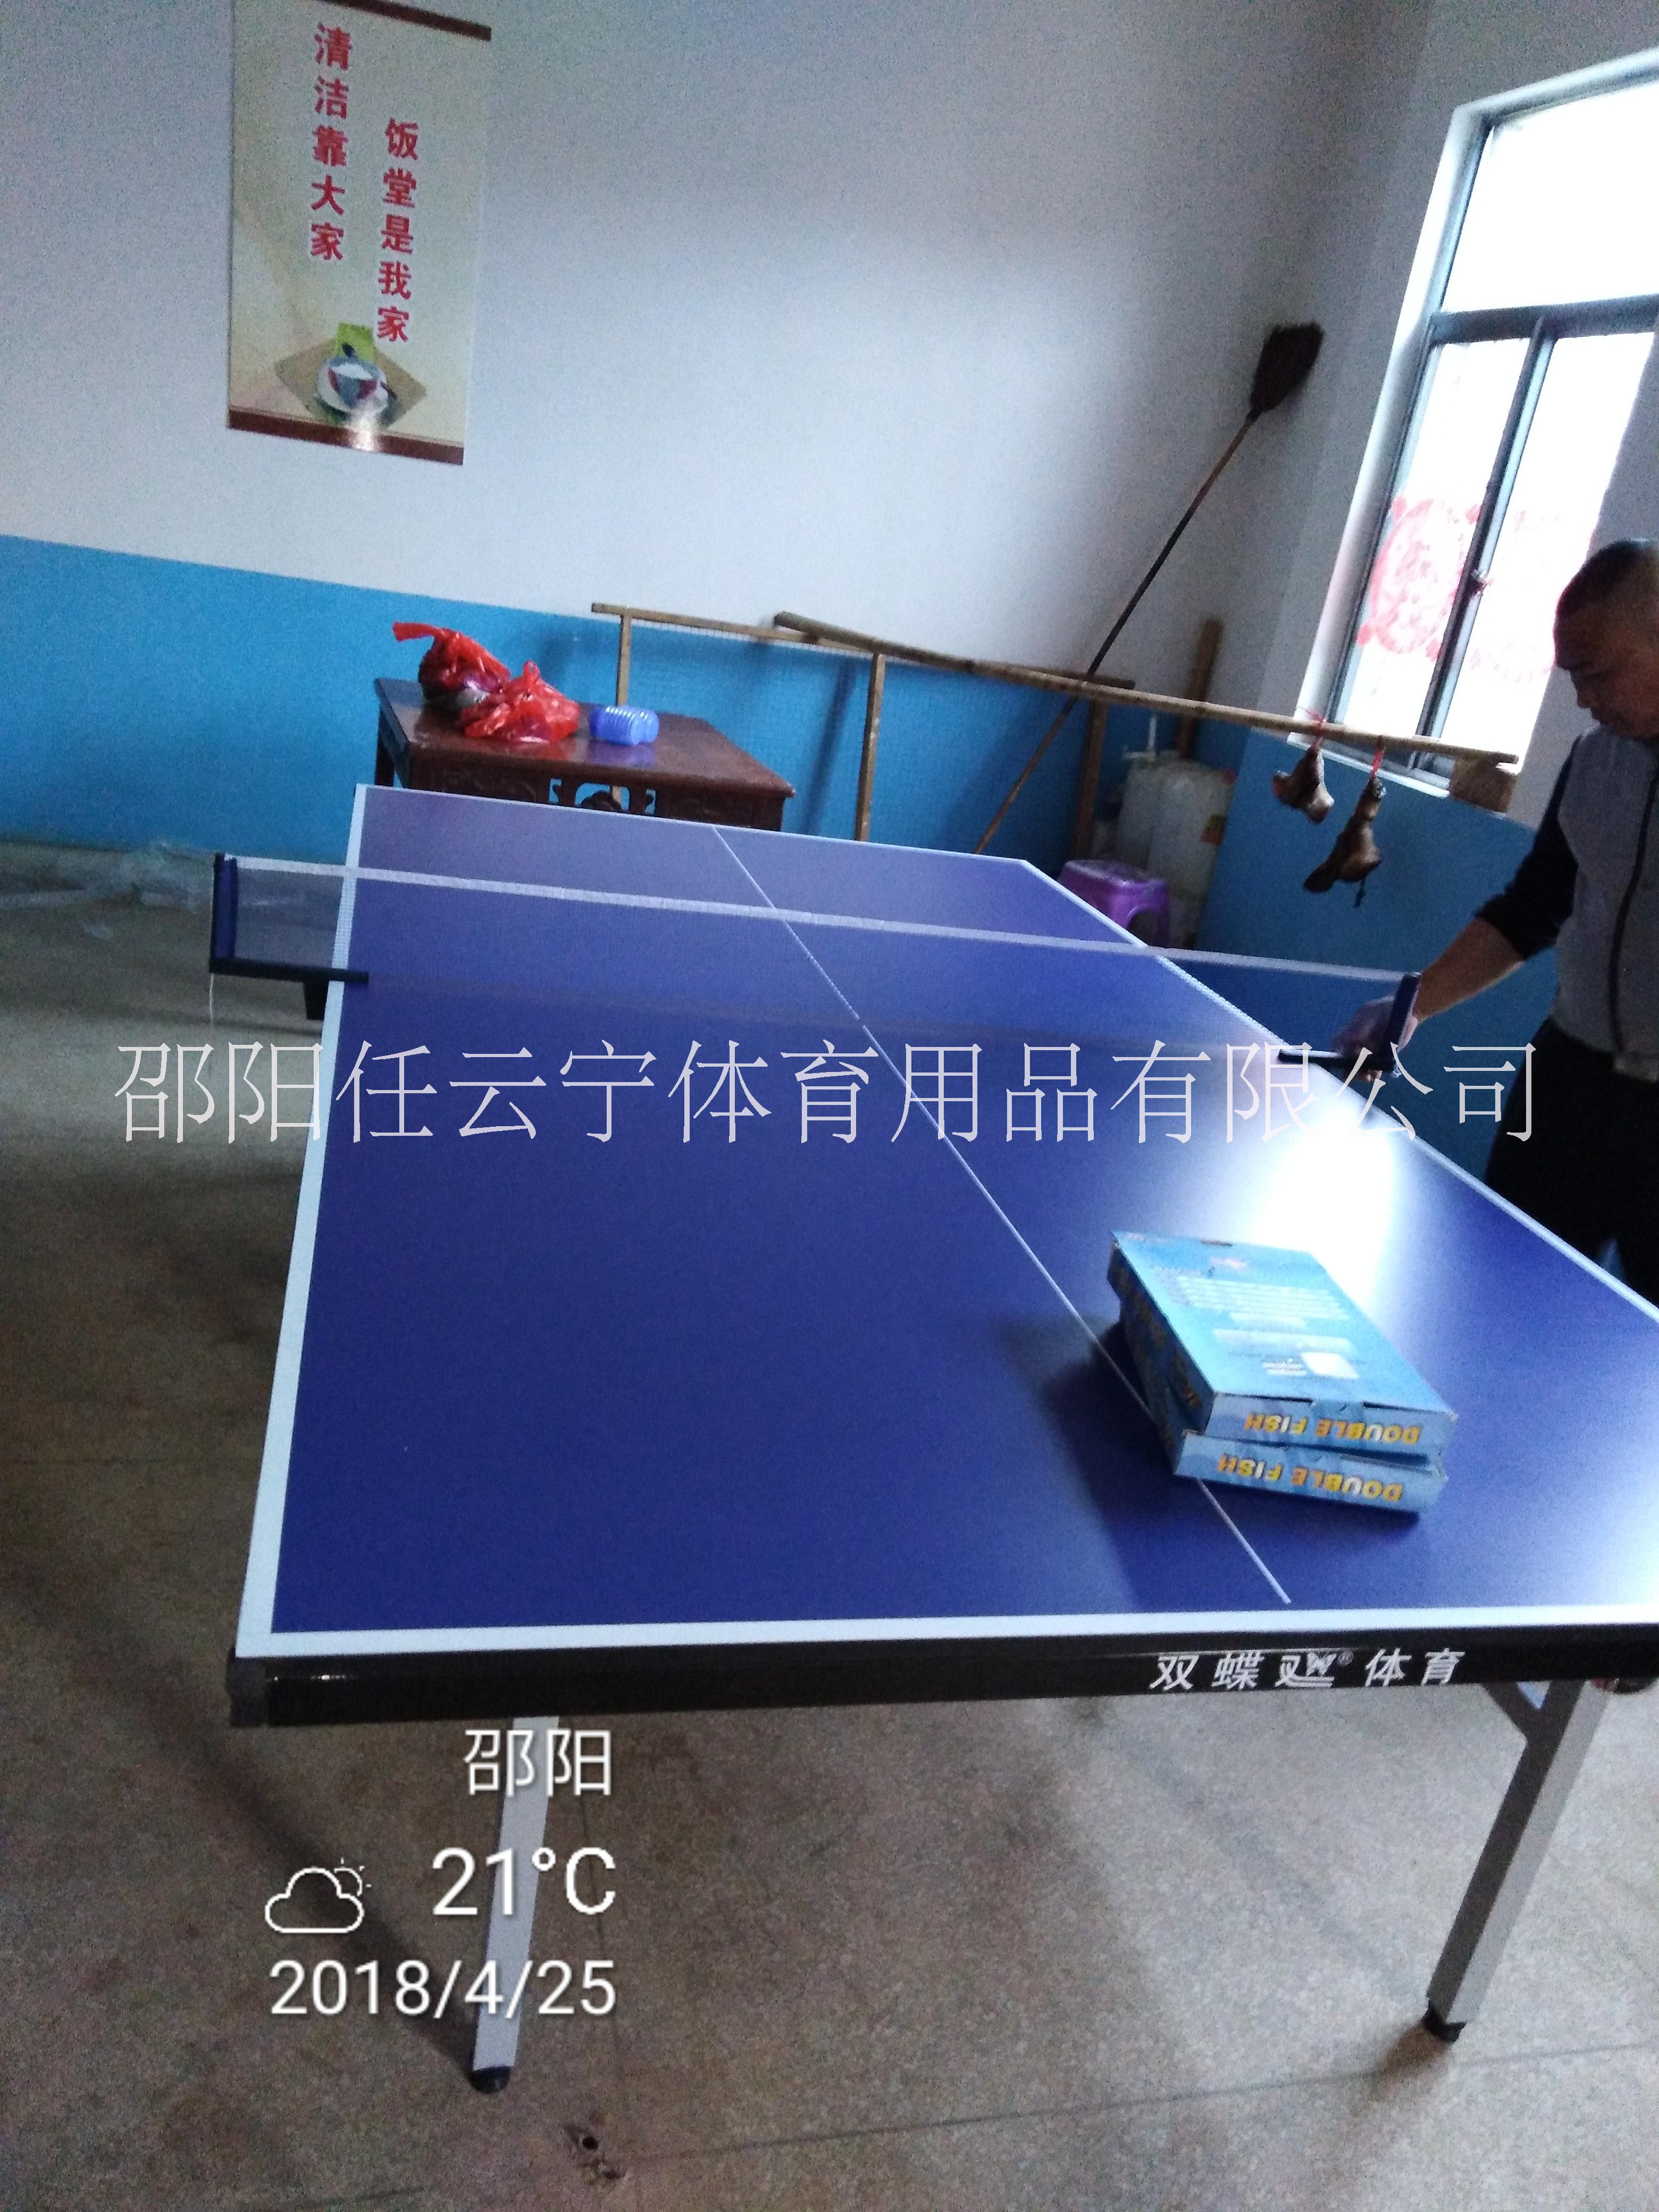 乒乓球桌邵阳乒乓球台邵阳室内乒乓球桌可收纳乒乓球桌图片